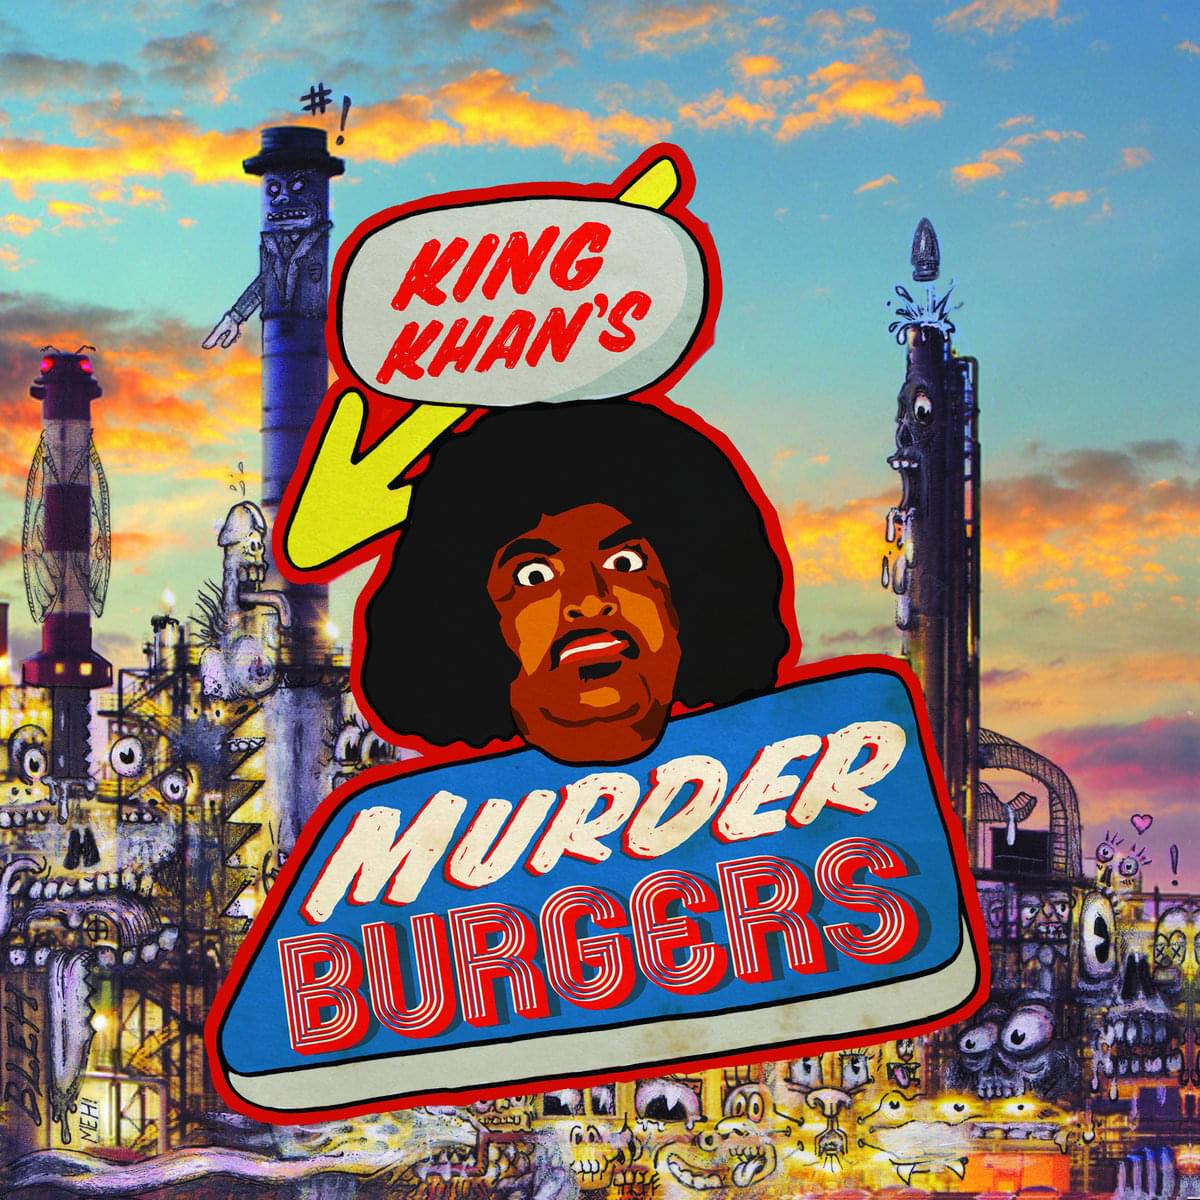 King khan murder burgers